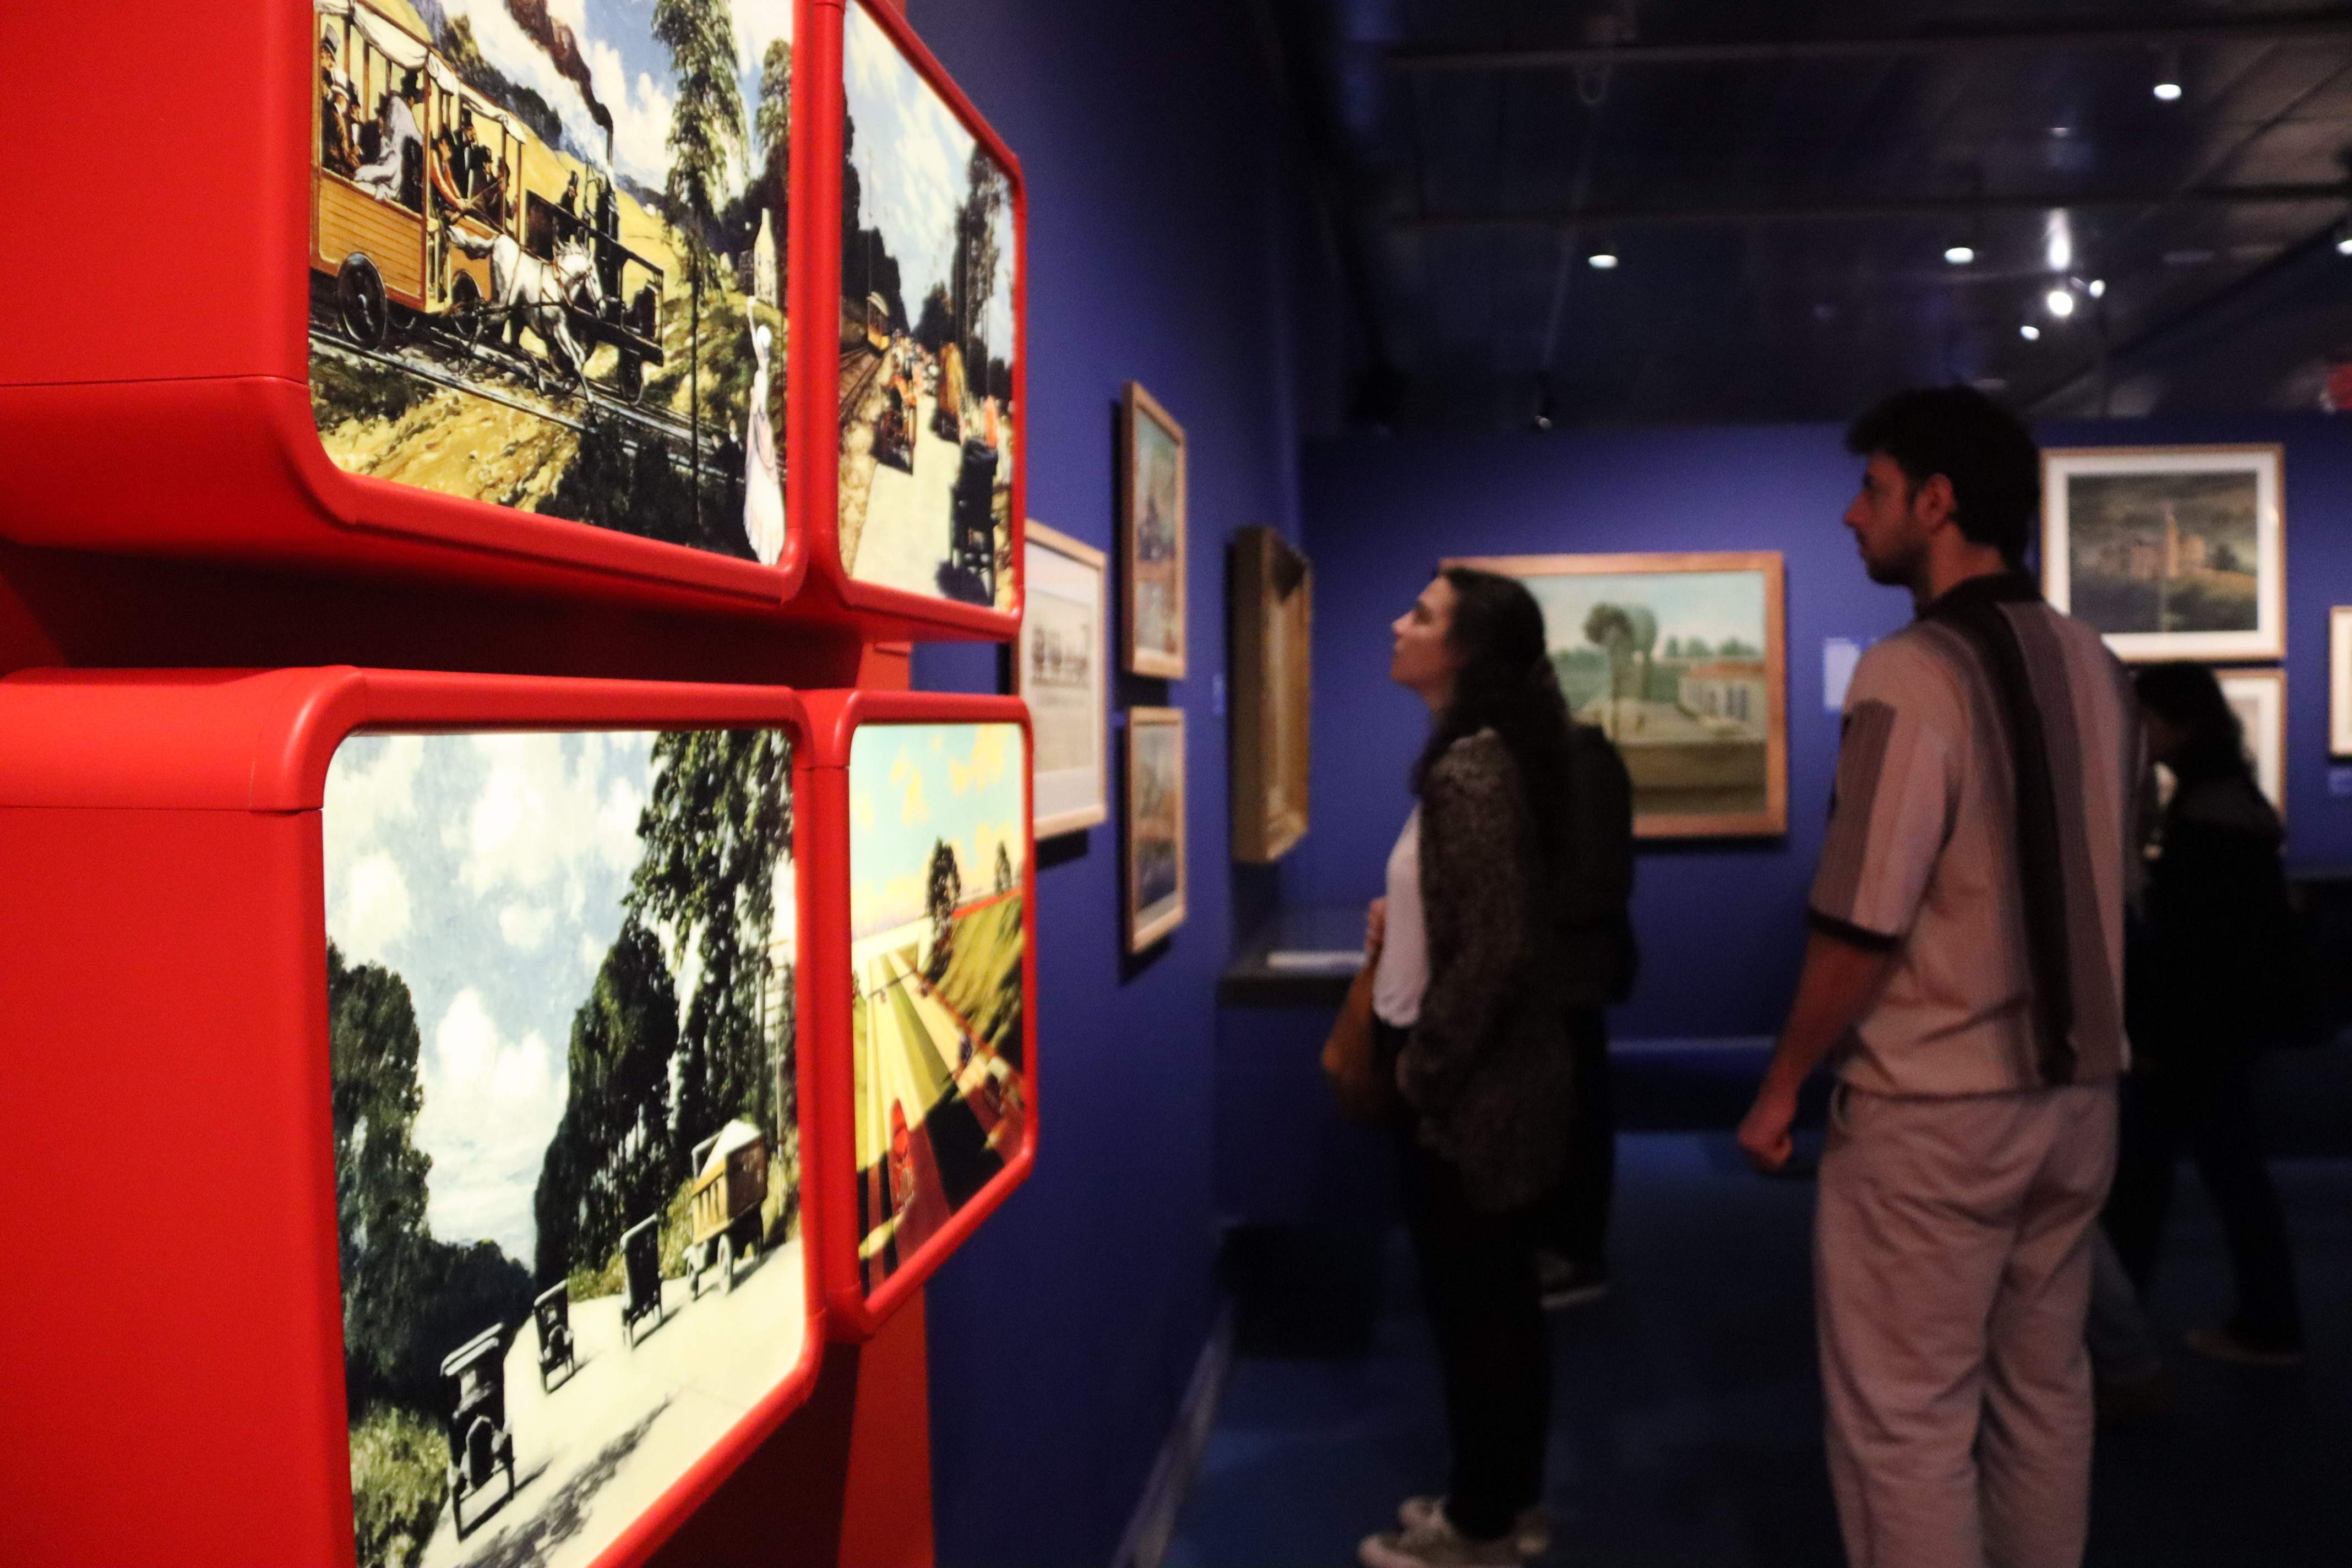 El MNAC, el MUHBA y el Cosmocaixa, los más visitados durante la Noche de los Museos